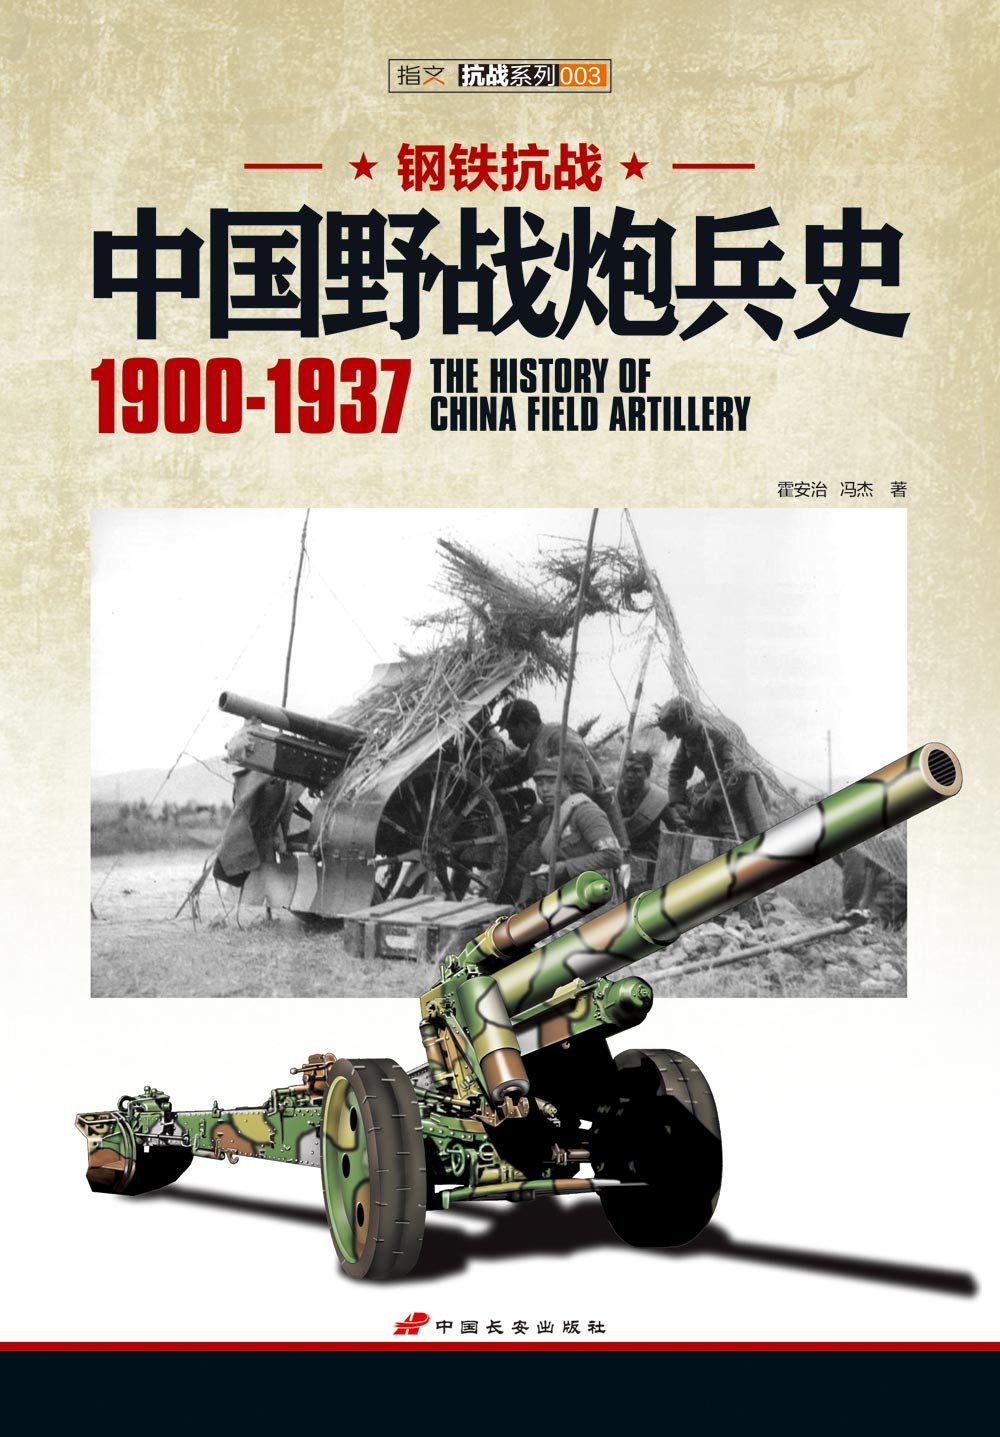 钢铁抗战:中国野战炮兵史